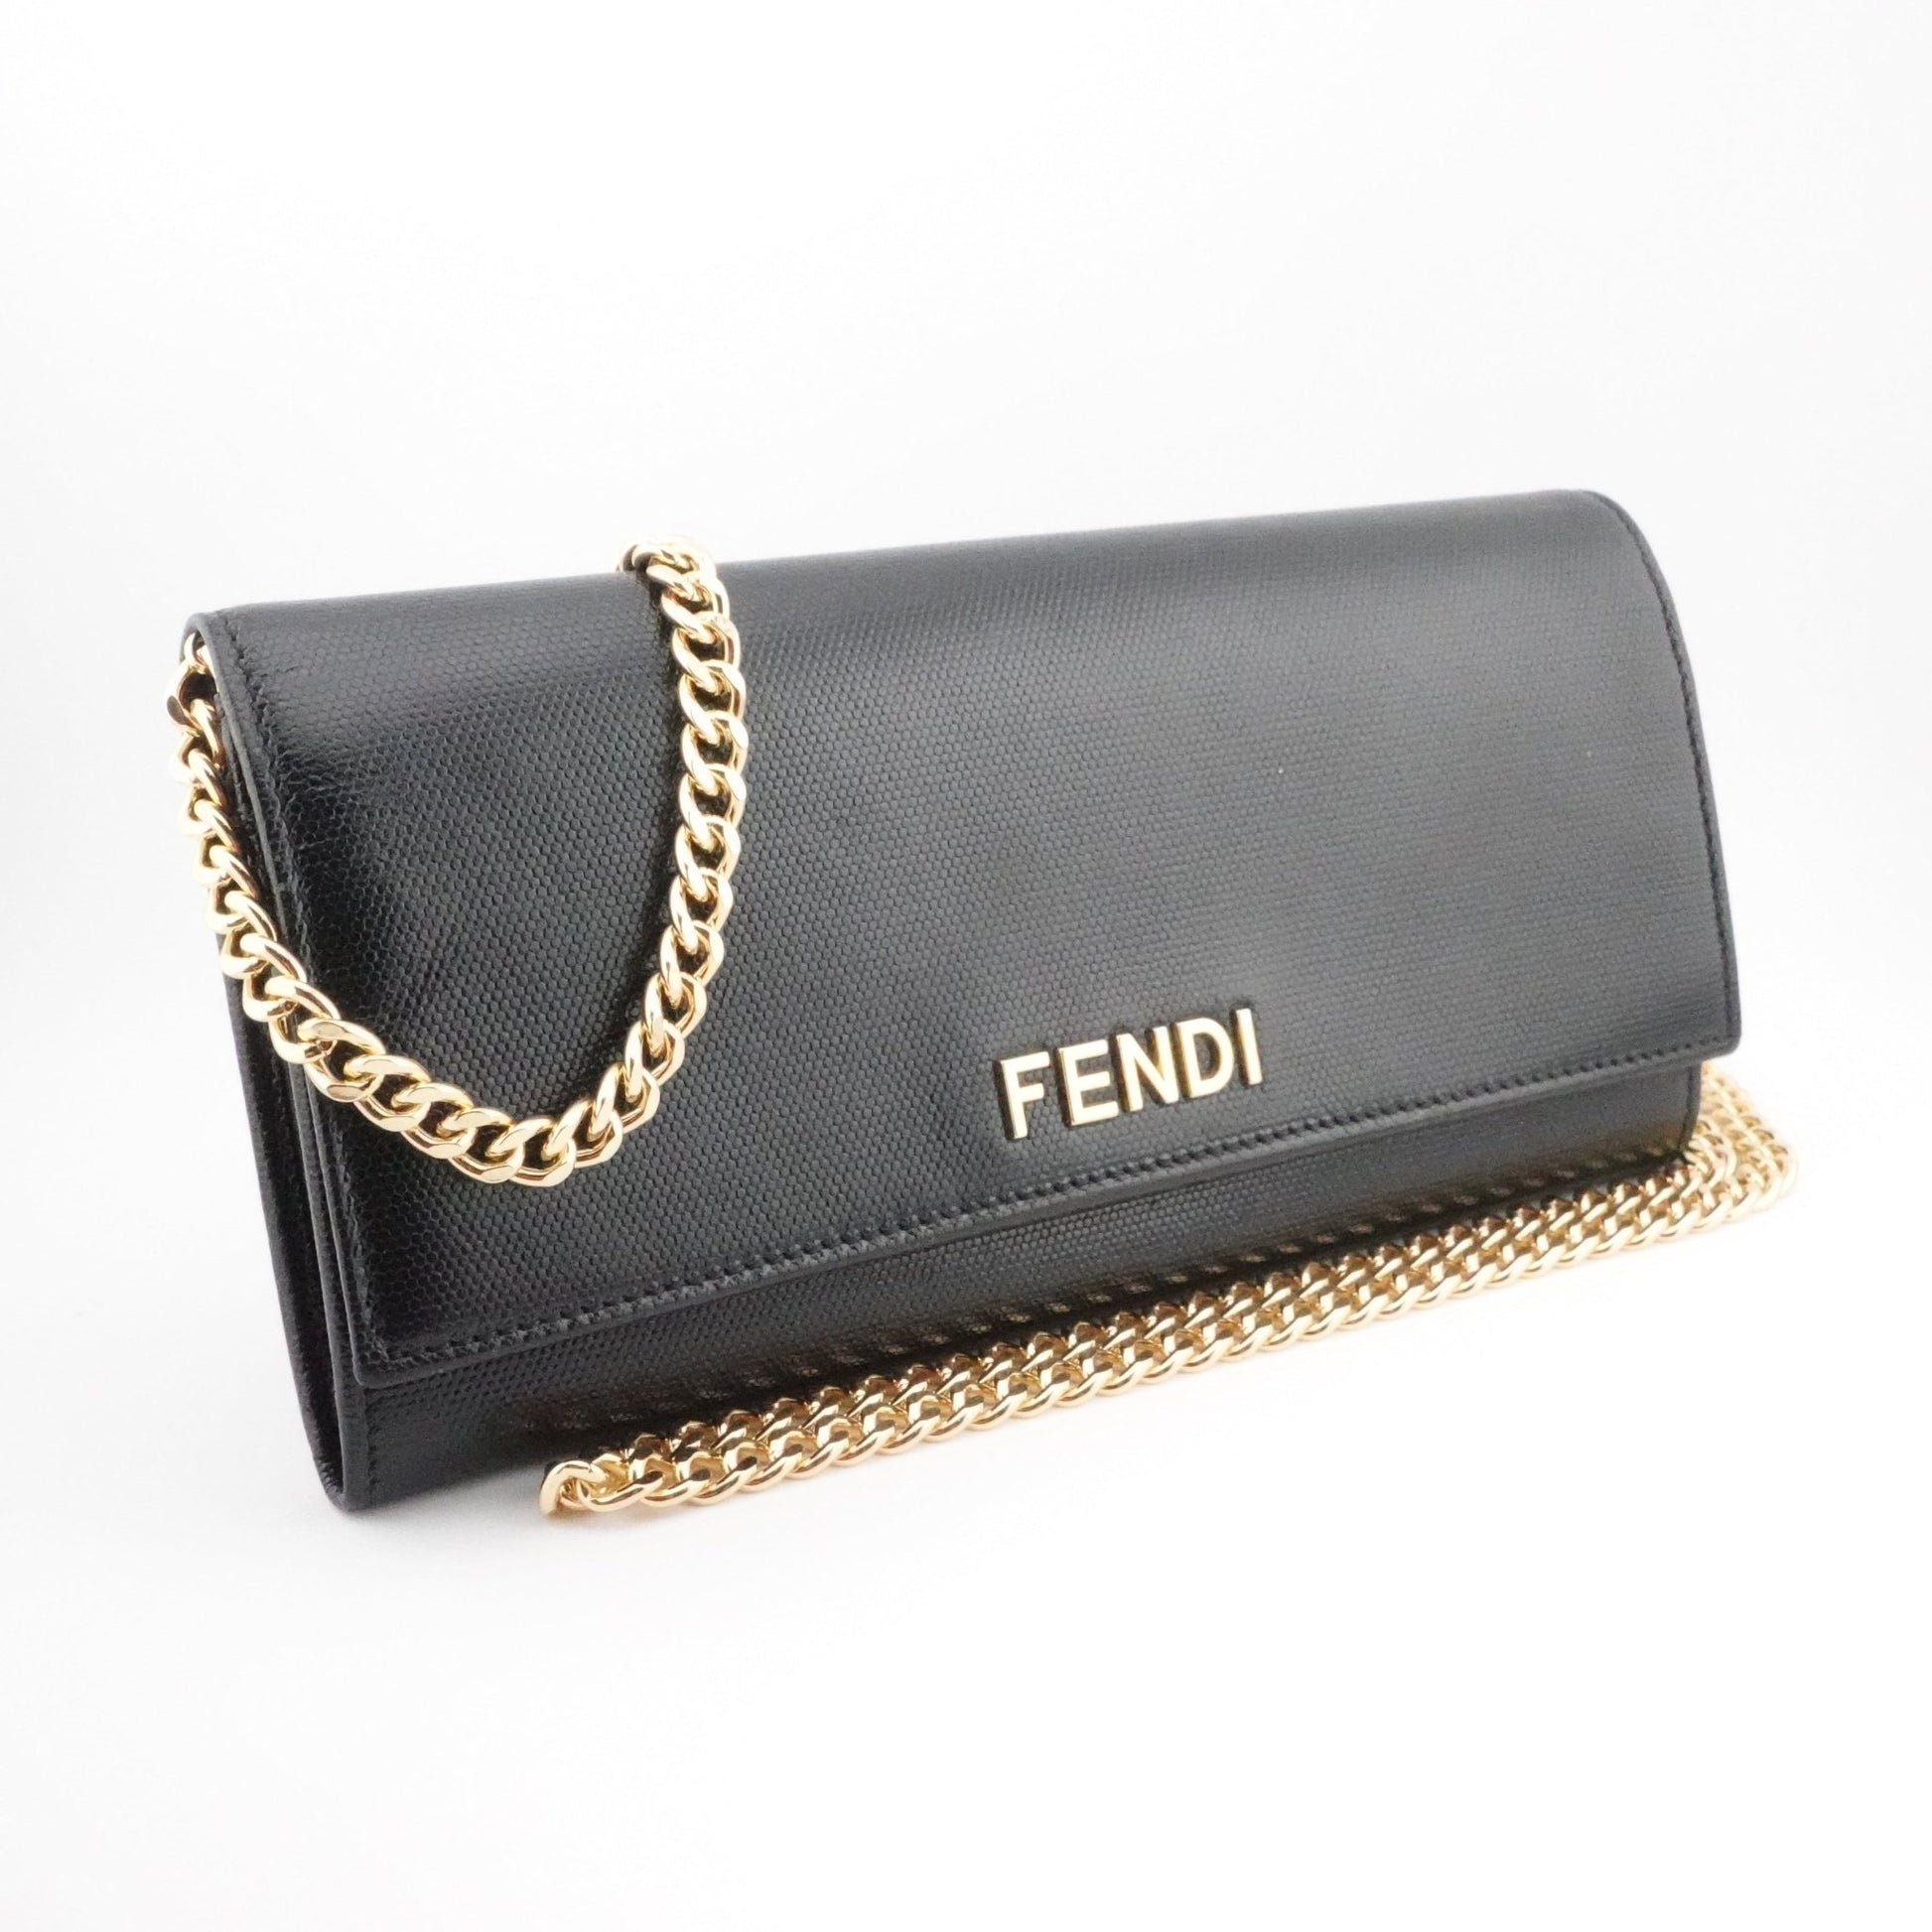 FENDI Grained Calfskin Wallet on Chain - Bag Envy